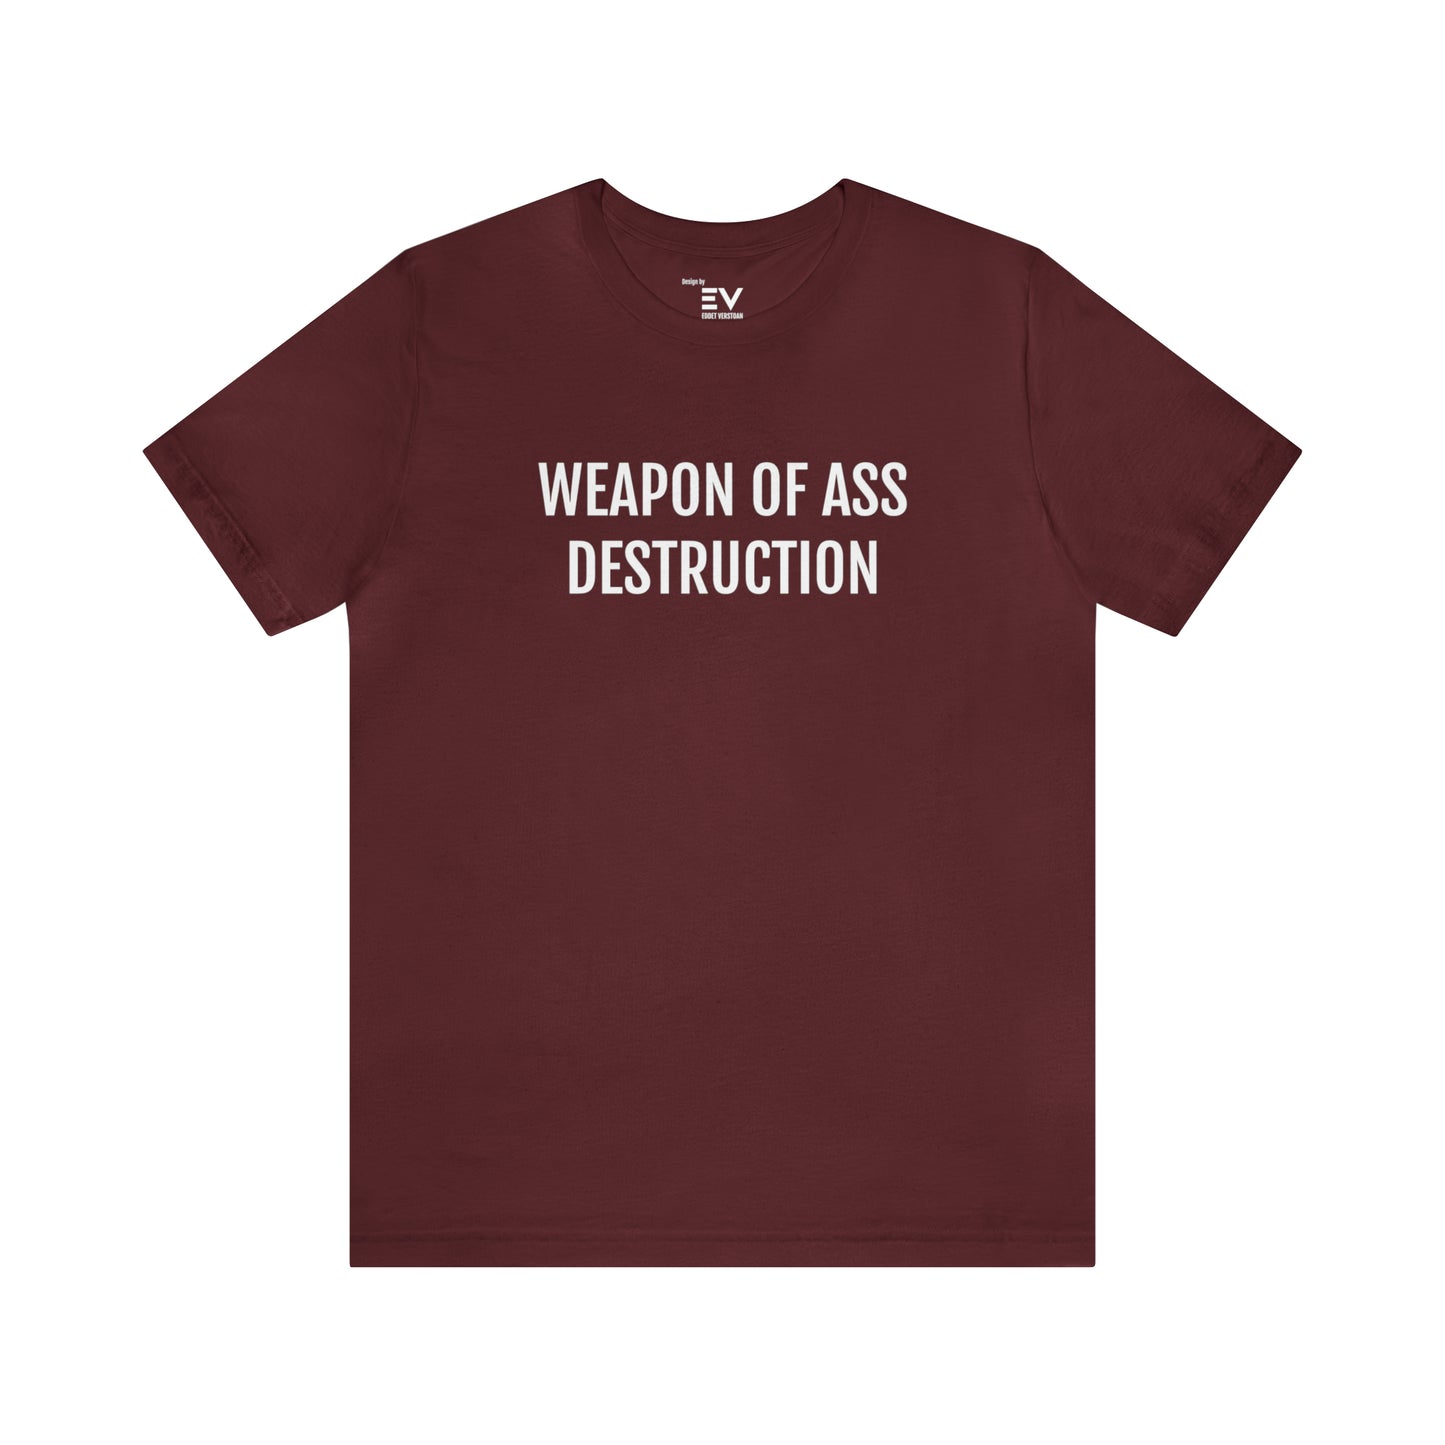 Weapon of ass destruction - rood Trendy T-shirt voor de Humorliefhebbers